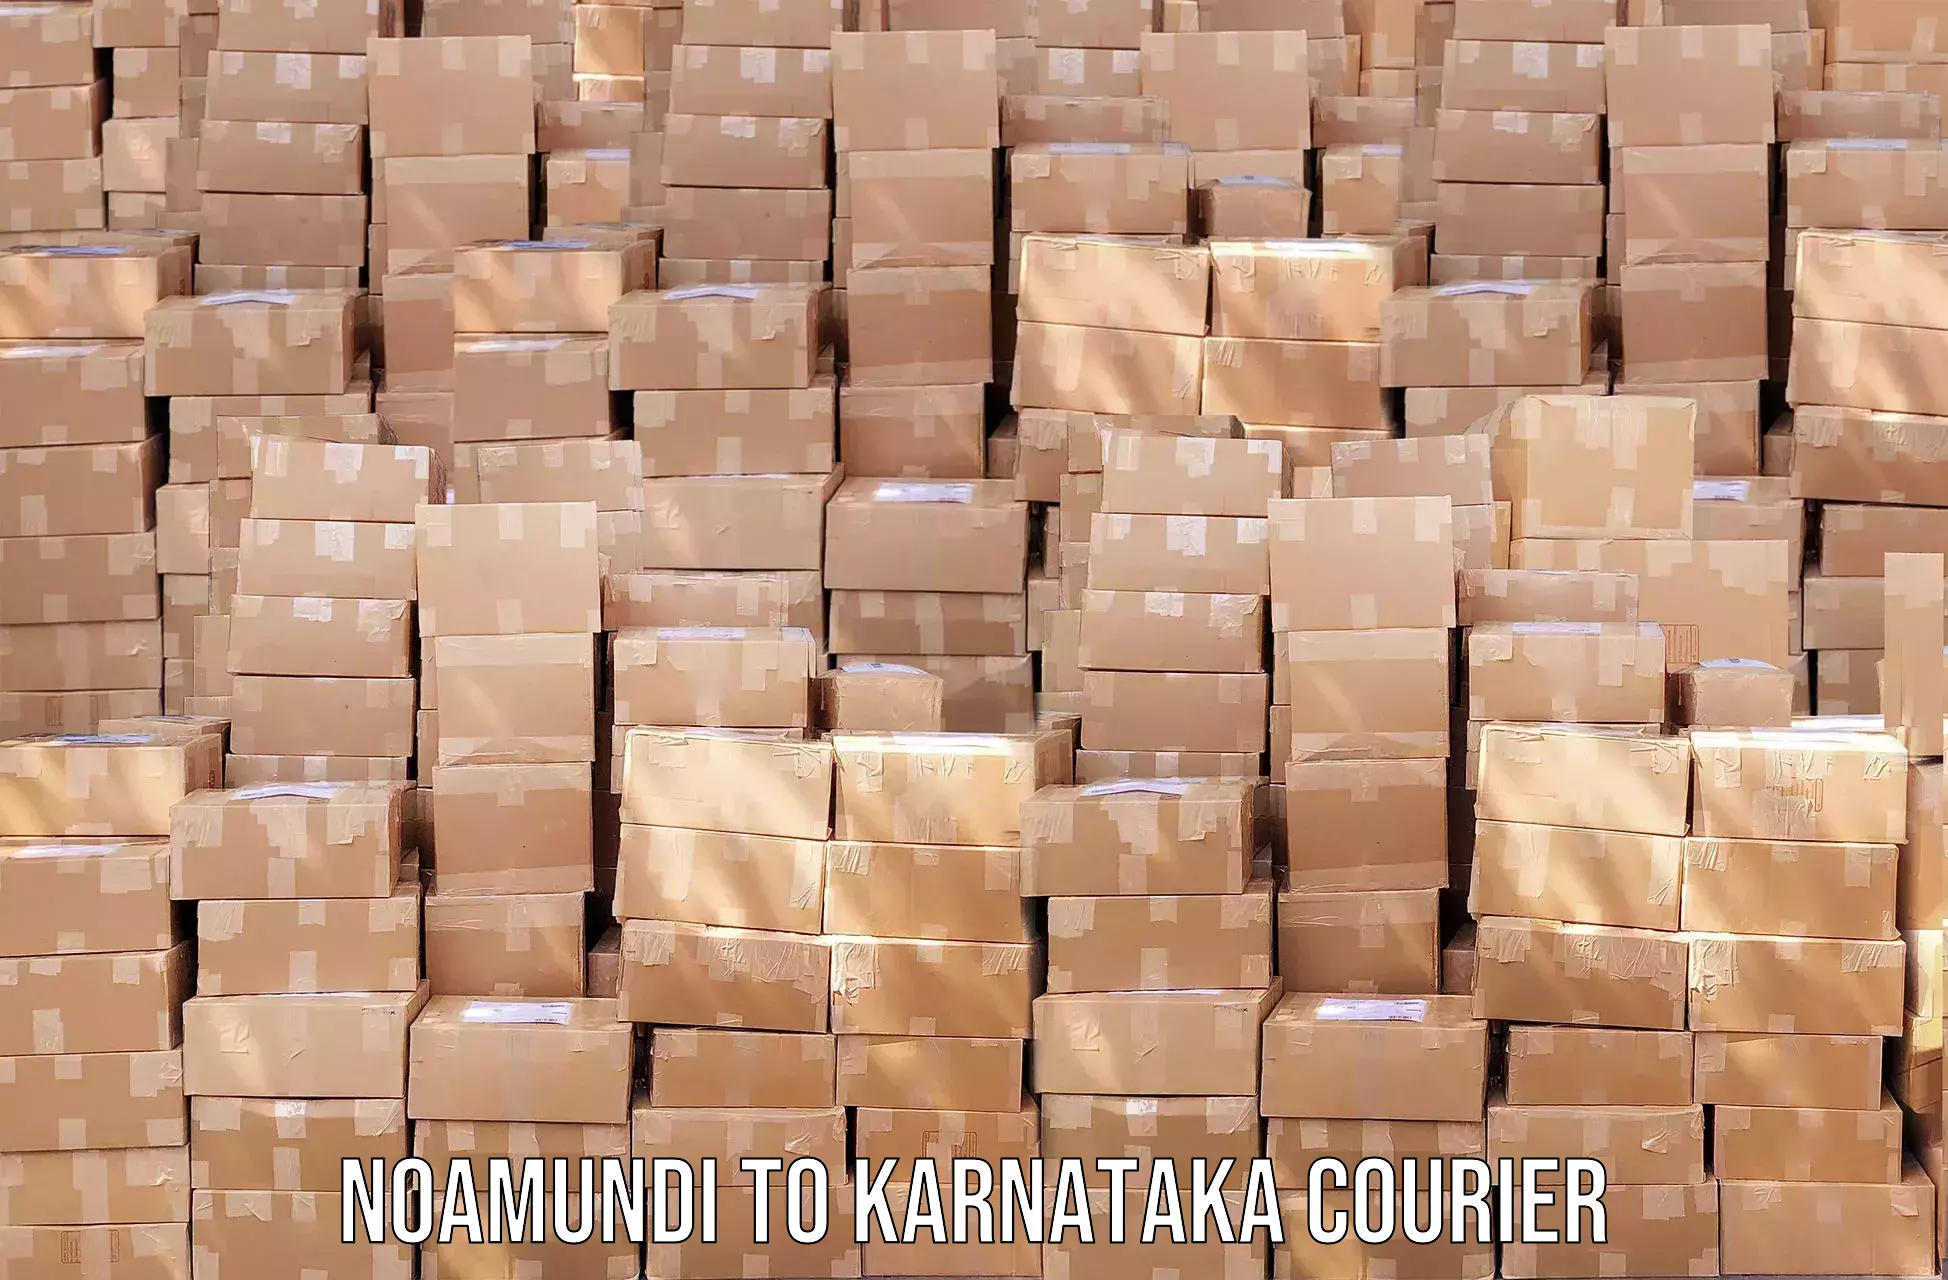 Seamless shipping service Noamundi to Karnataka